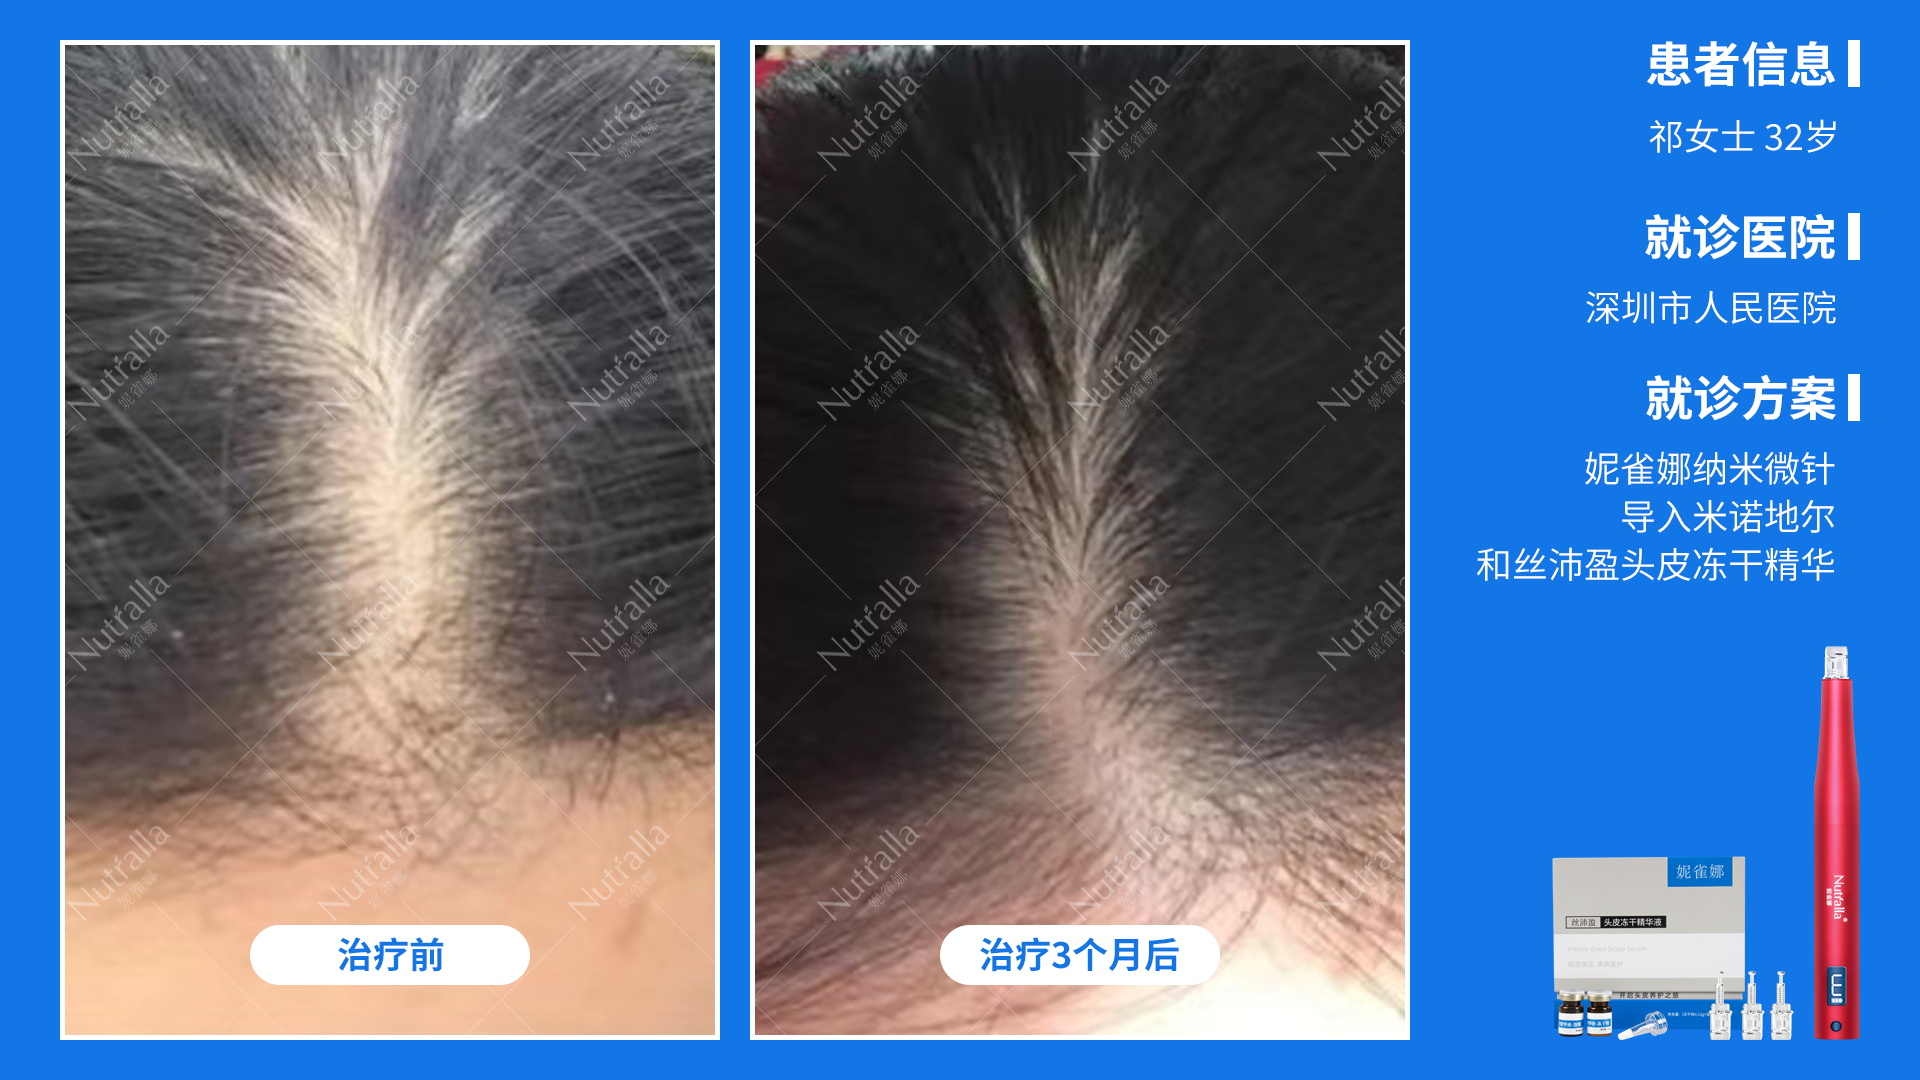 深圳市人民医院  女性 雄性激素脱发 32岁  外用5%米诺地尔+妮雀娜微针导入12次三个月治疗前后对比